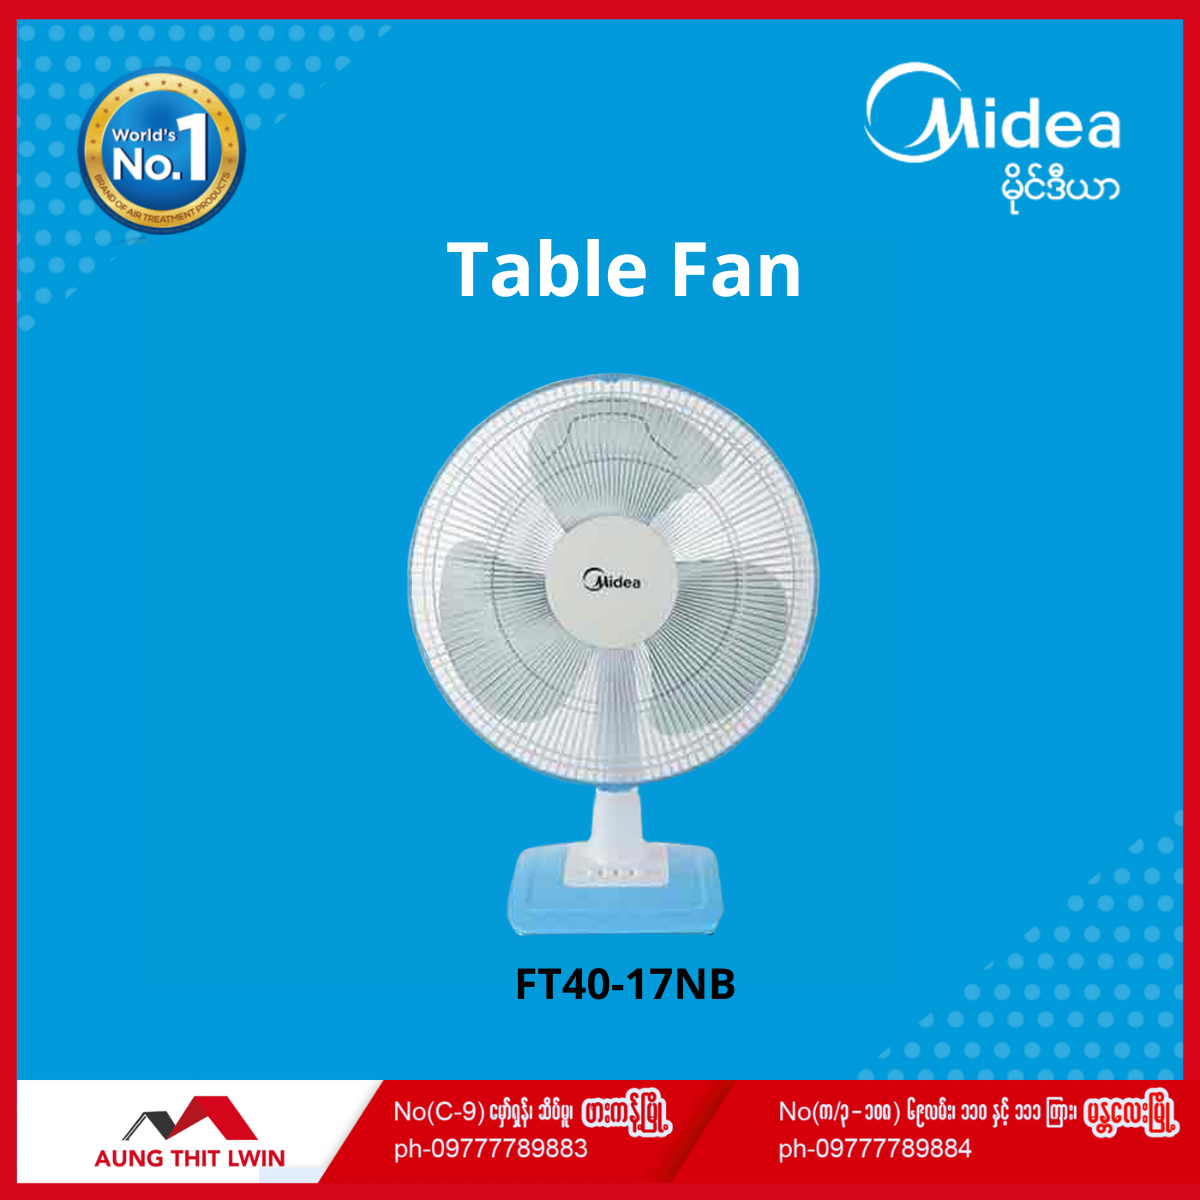 Midea Table Fan Ft40 17nb Aung Thit Lwin